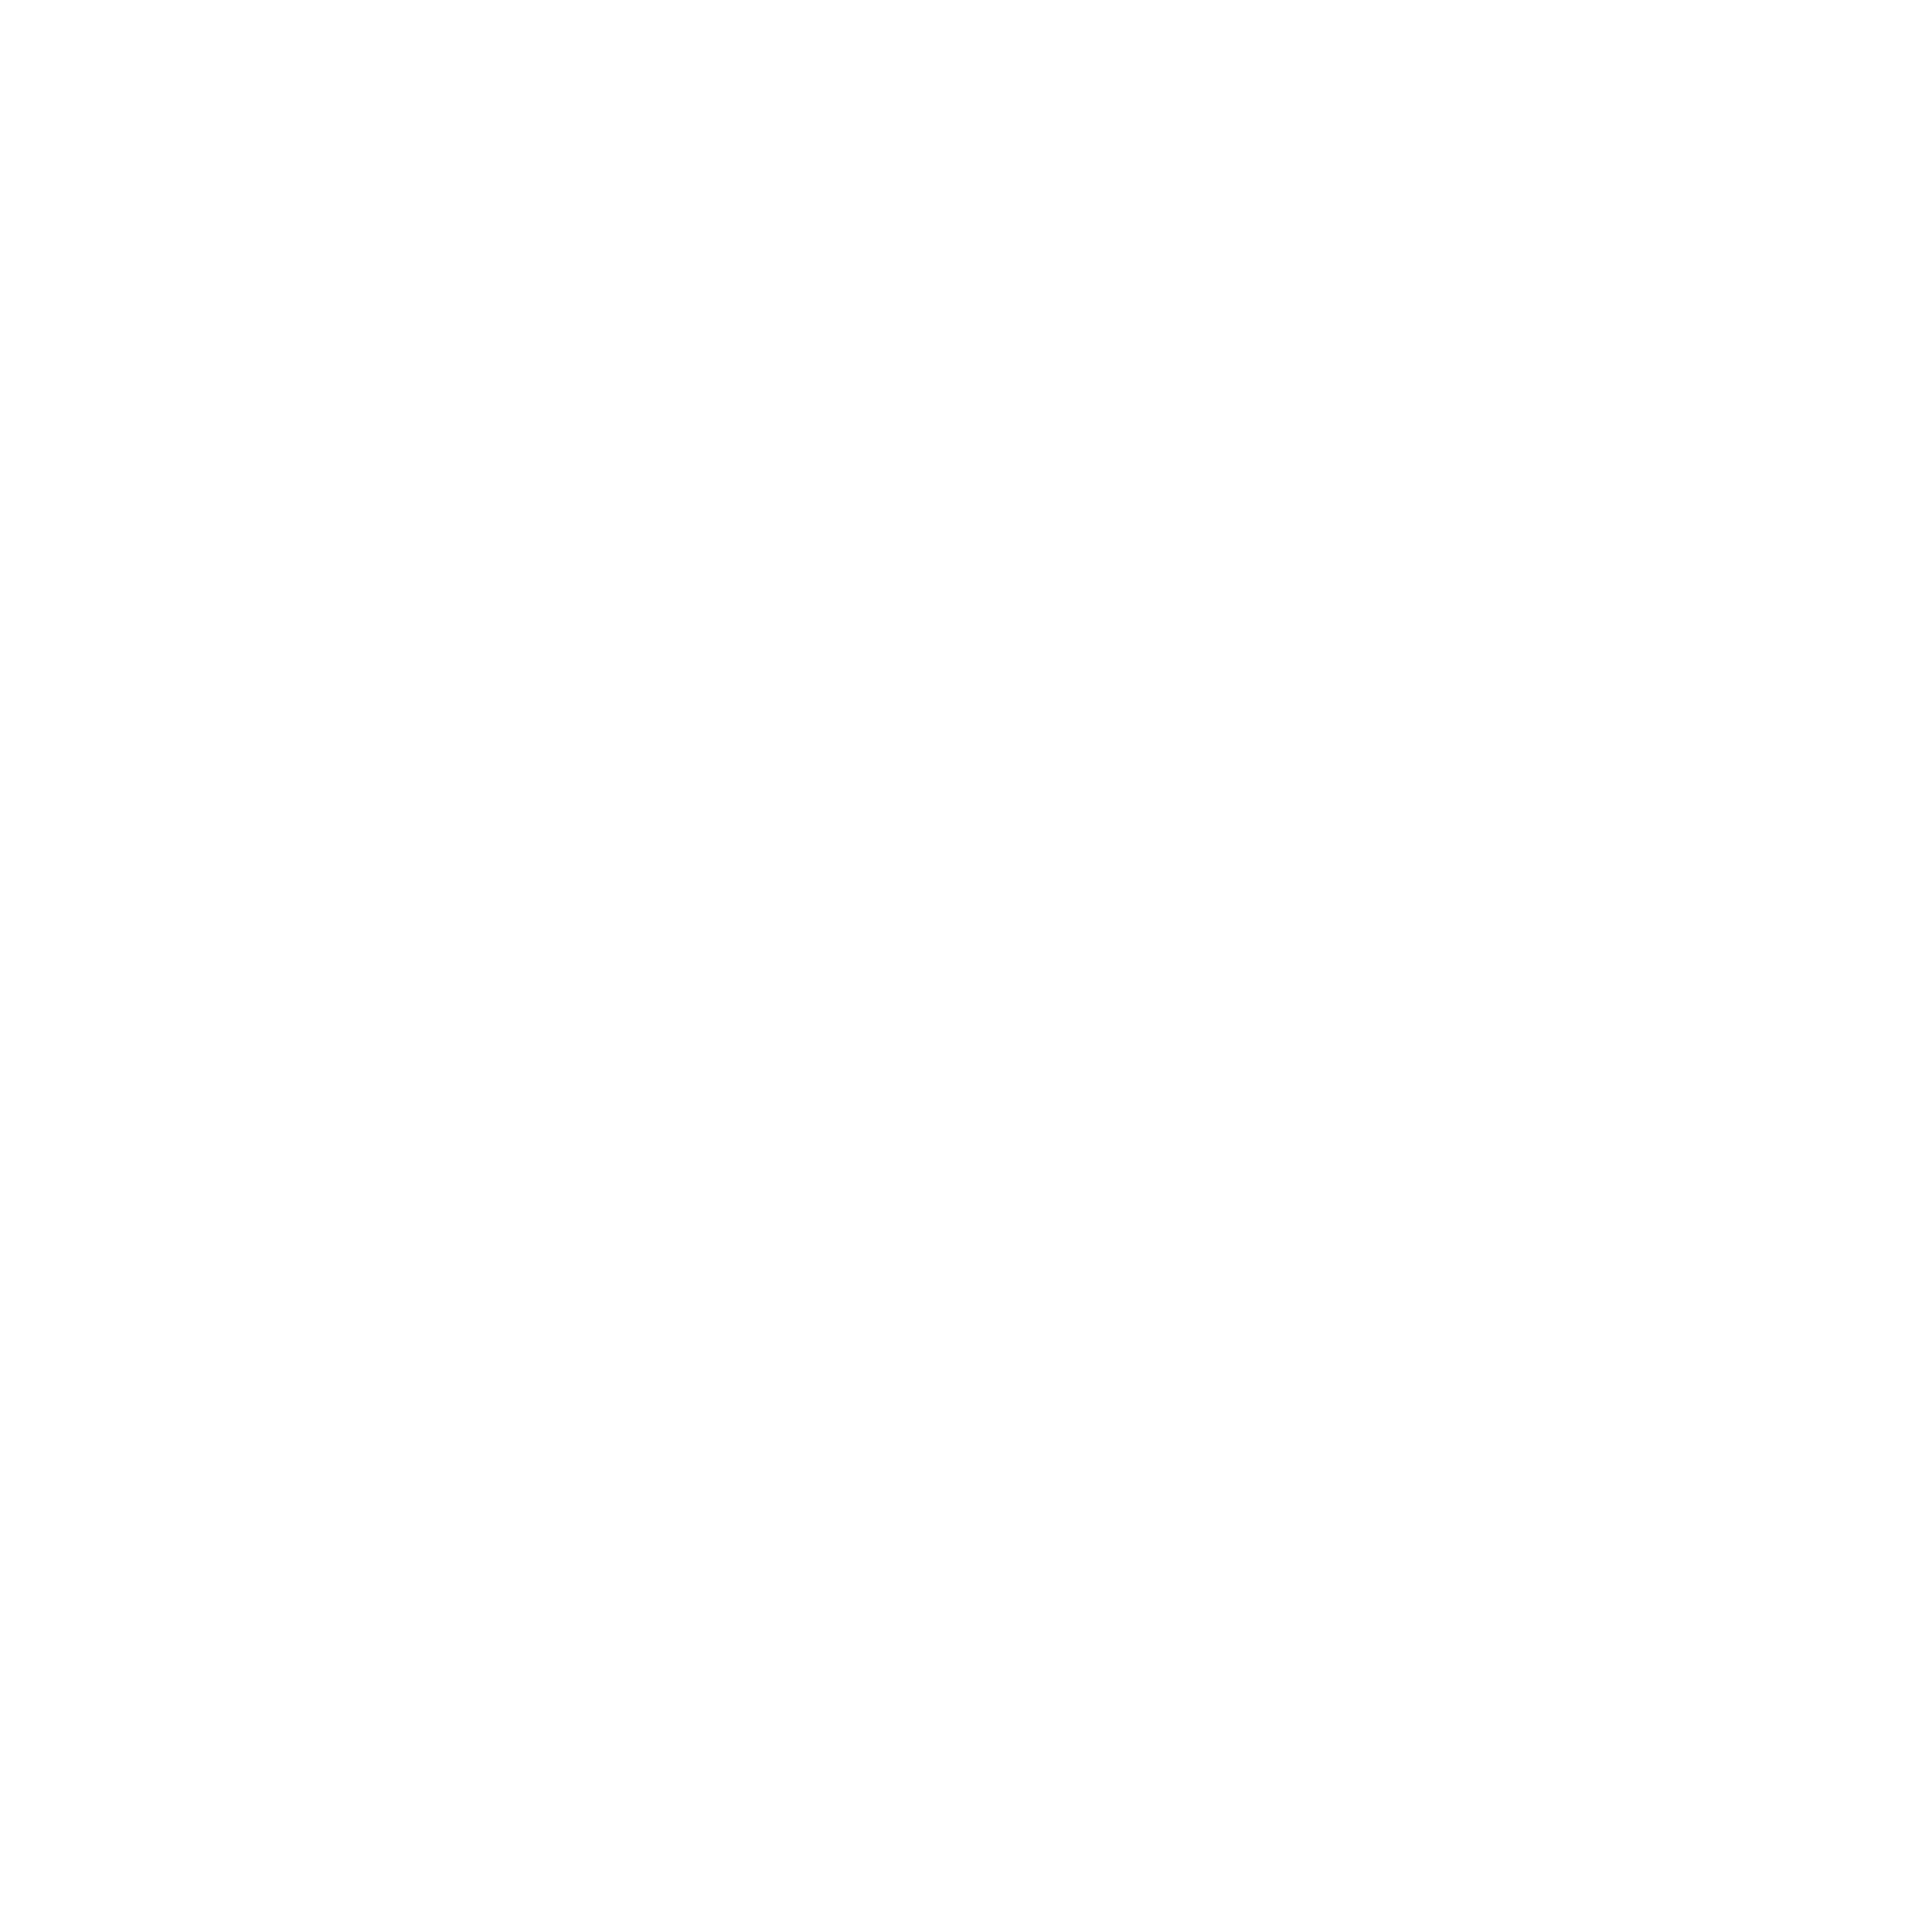 caddies